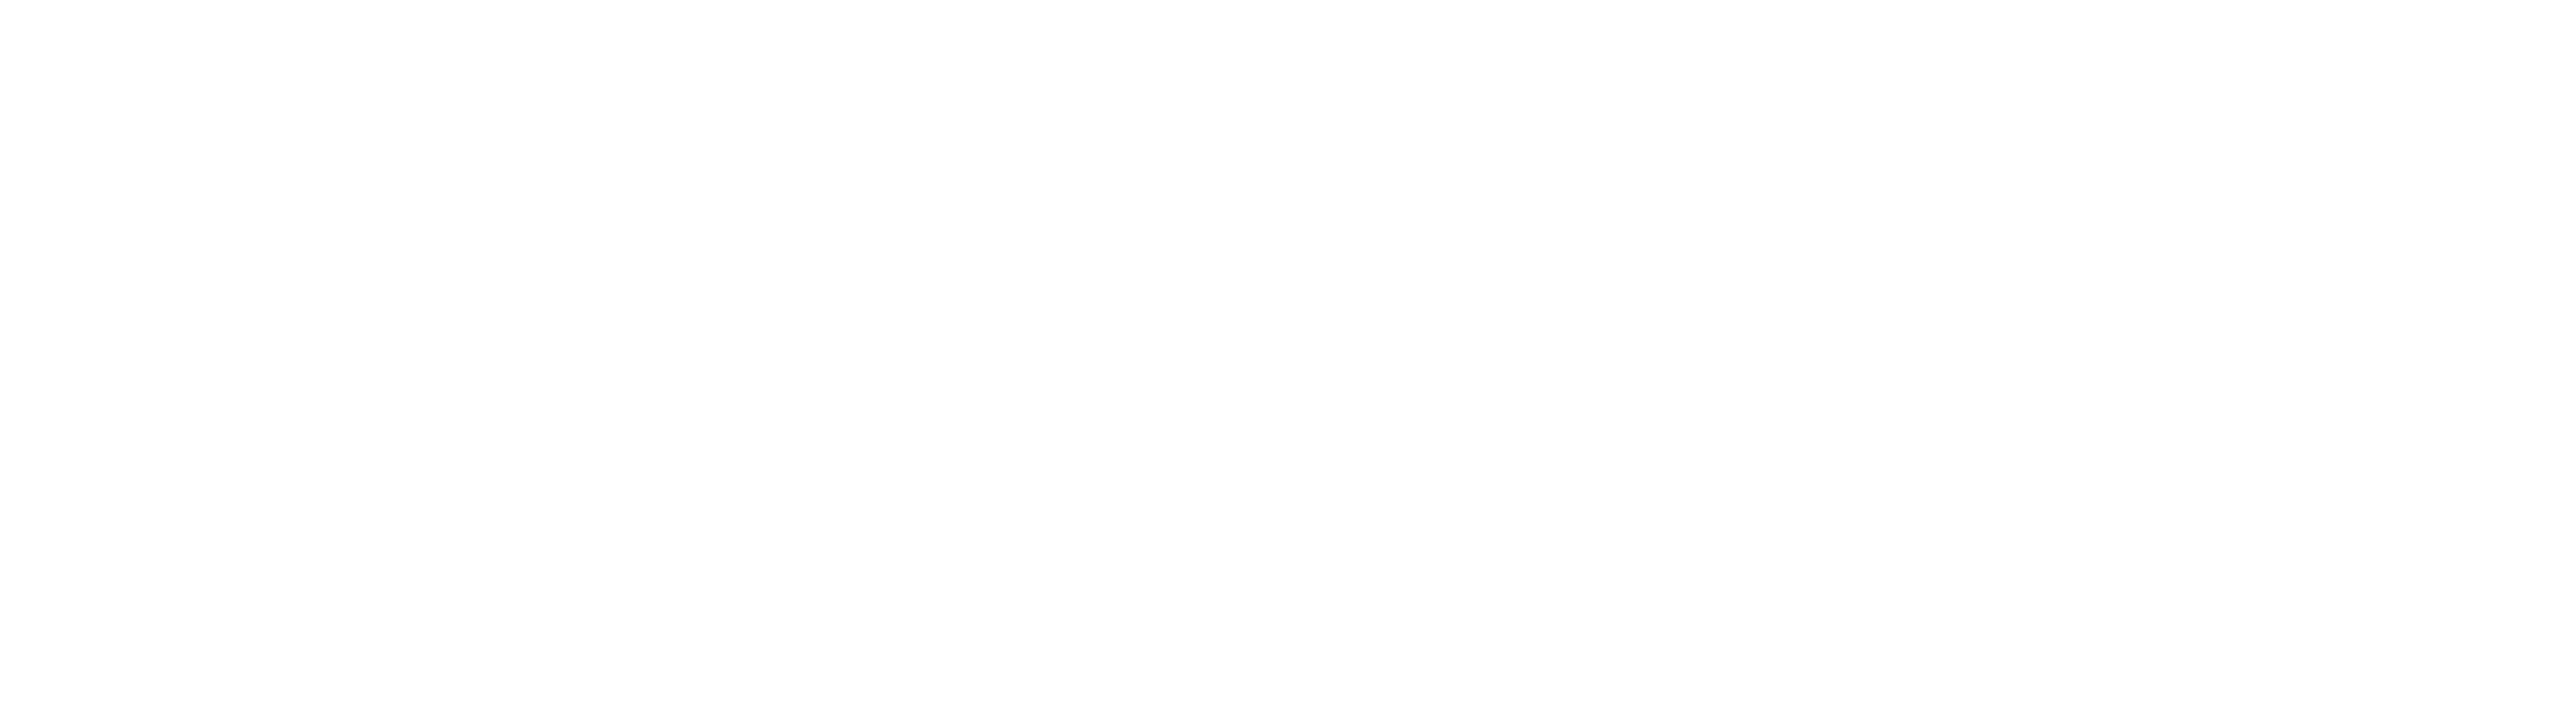 ProfessioneleWebsites.eu